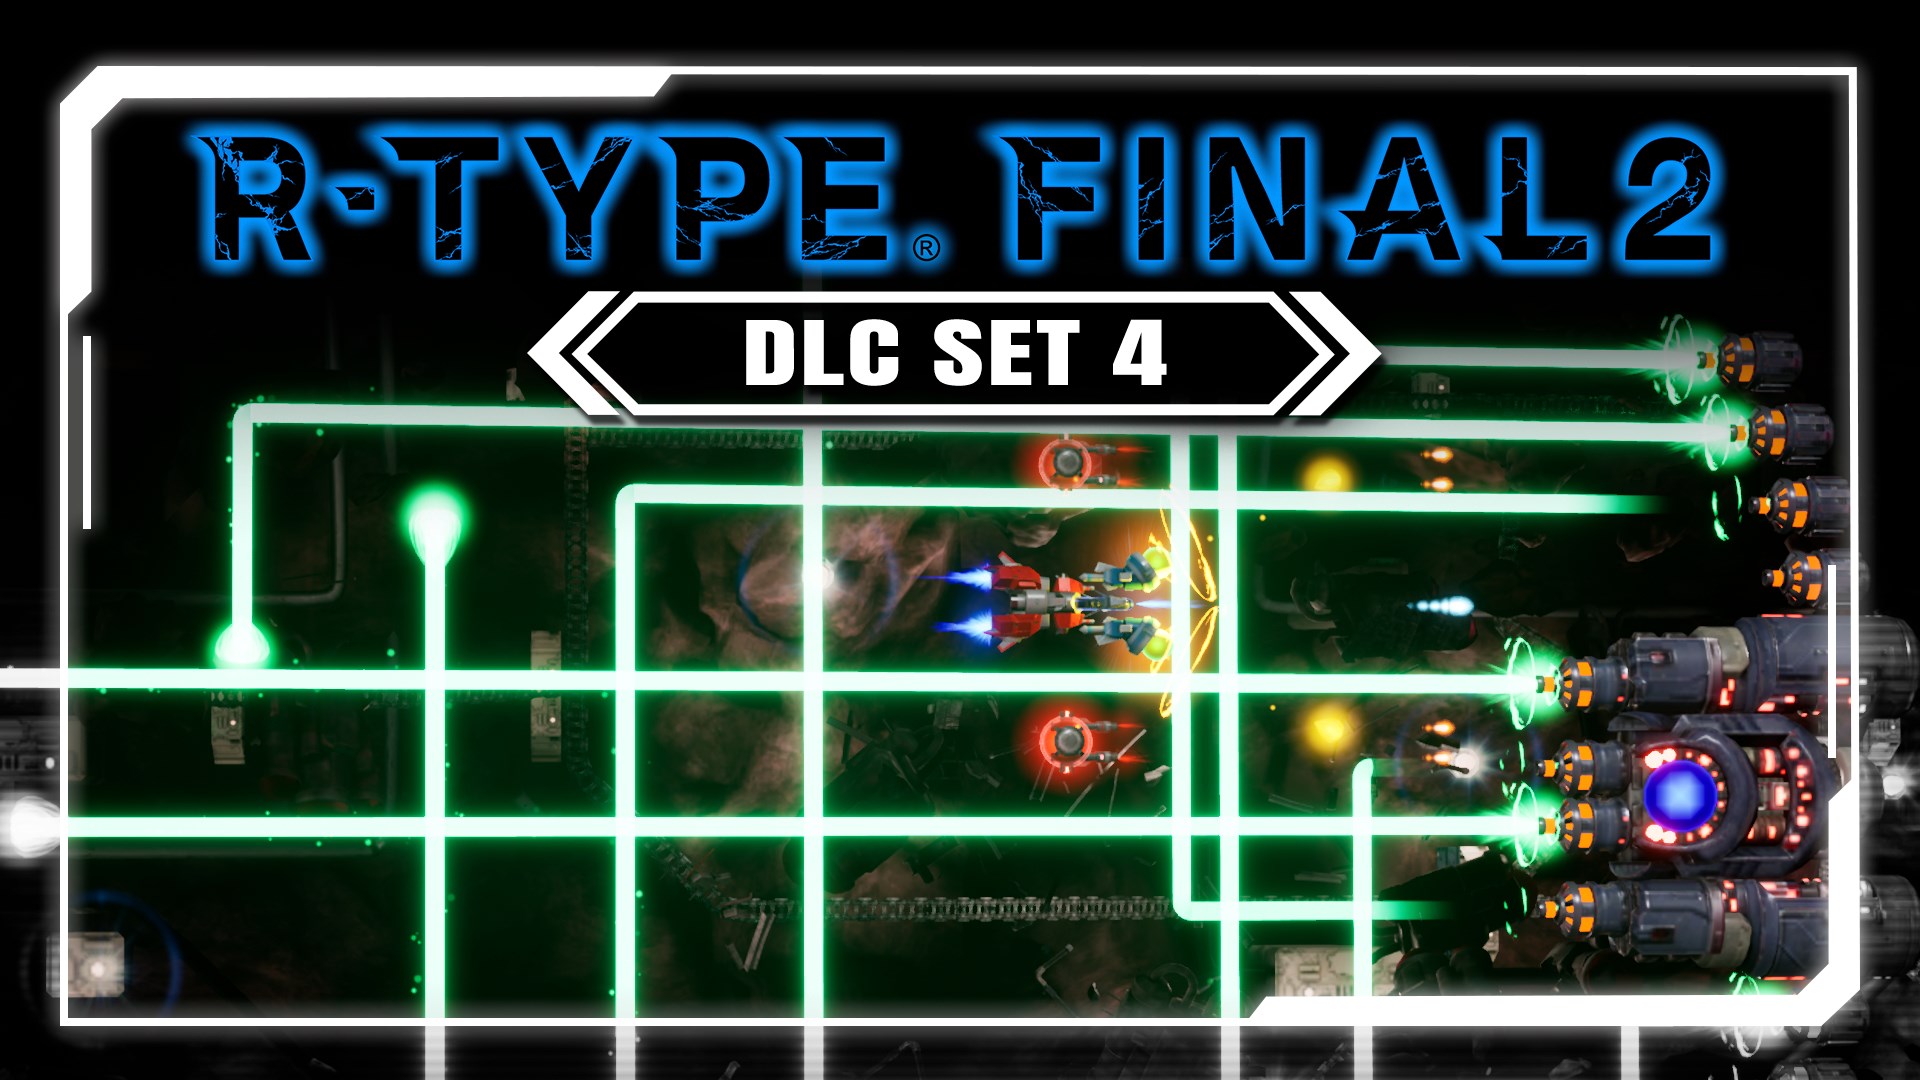 R-Type Final 2 PC: DLC Set 4